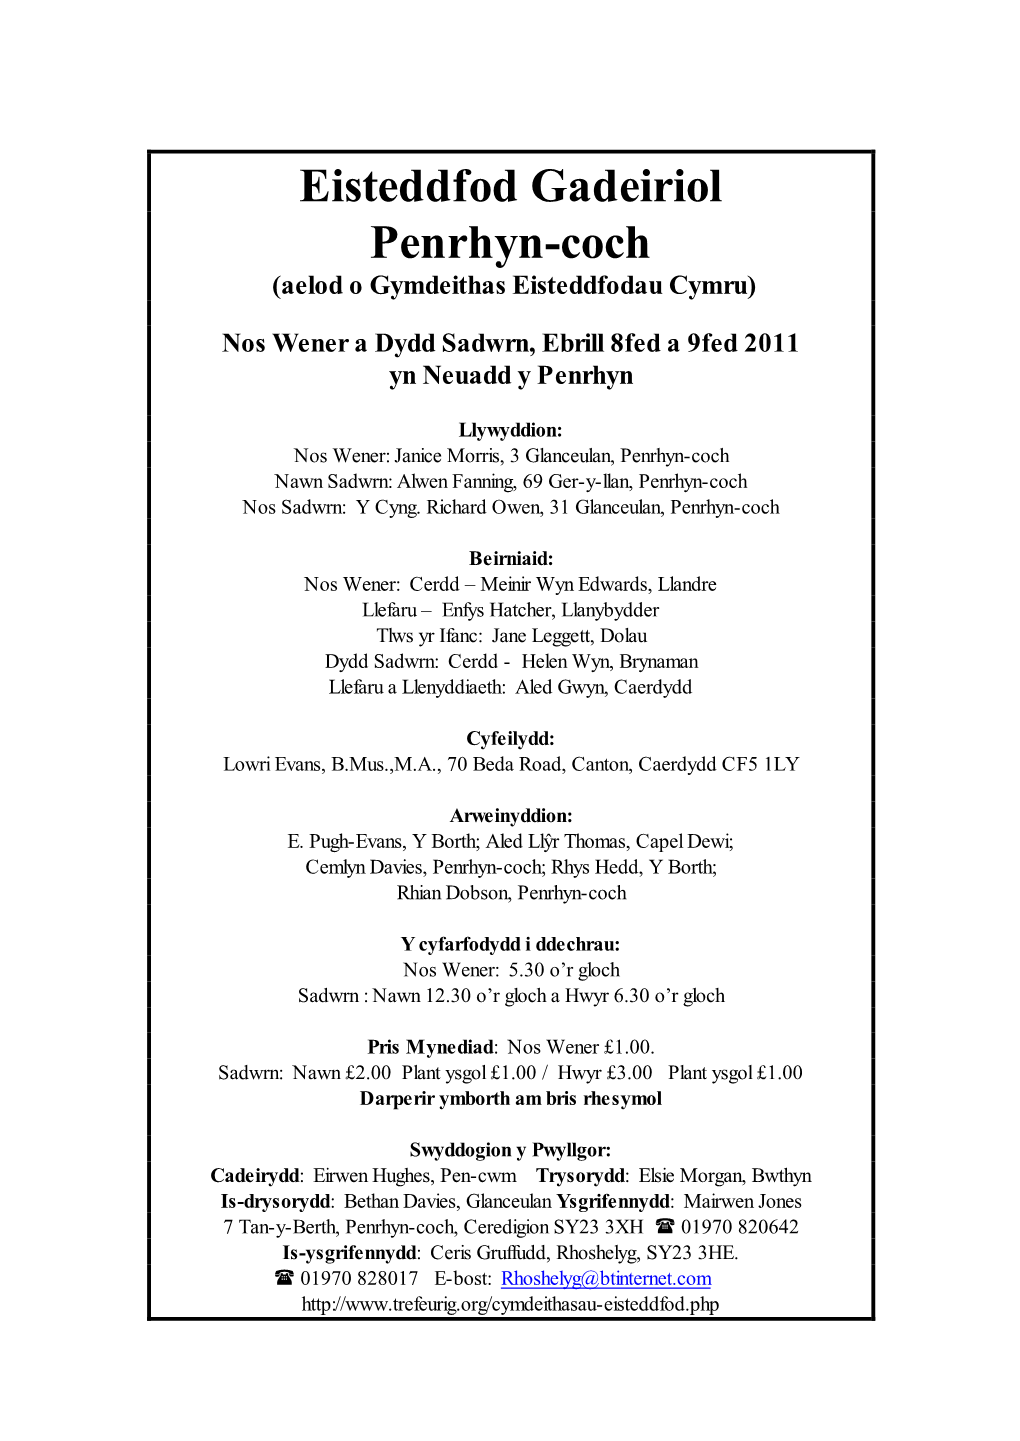 Eisteddfod Gadeiriol Penrhyn-Coch (Aelod O Gymdeithas Eisteddfodau Cymru)